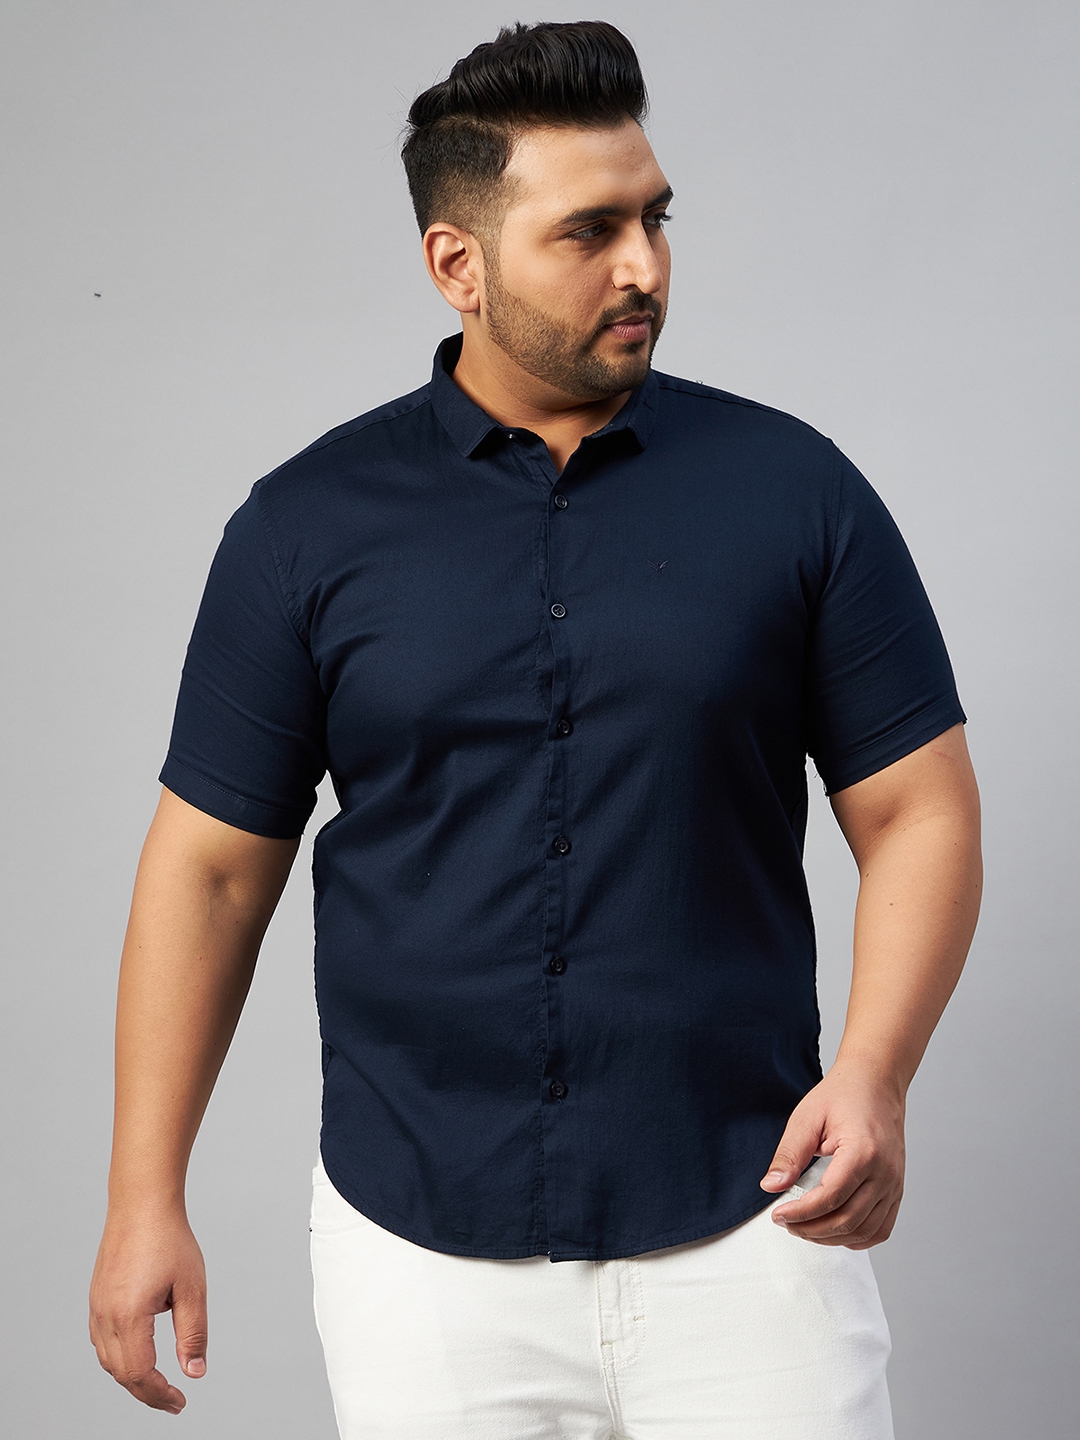 SHOWOFF Plus Men's Cotton Solid Navy Blue Comfort Fit Shirt